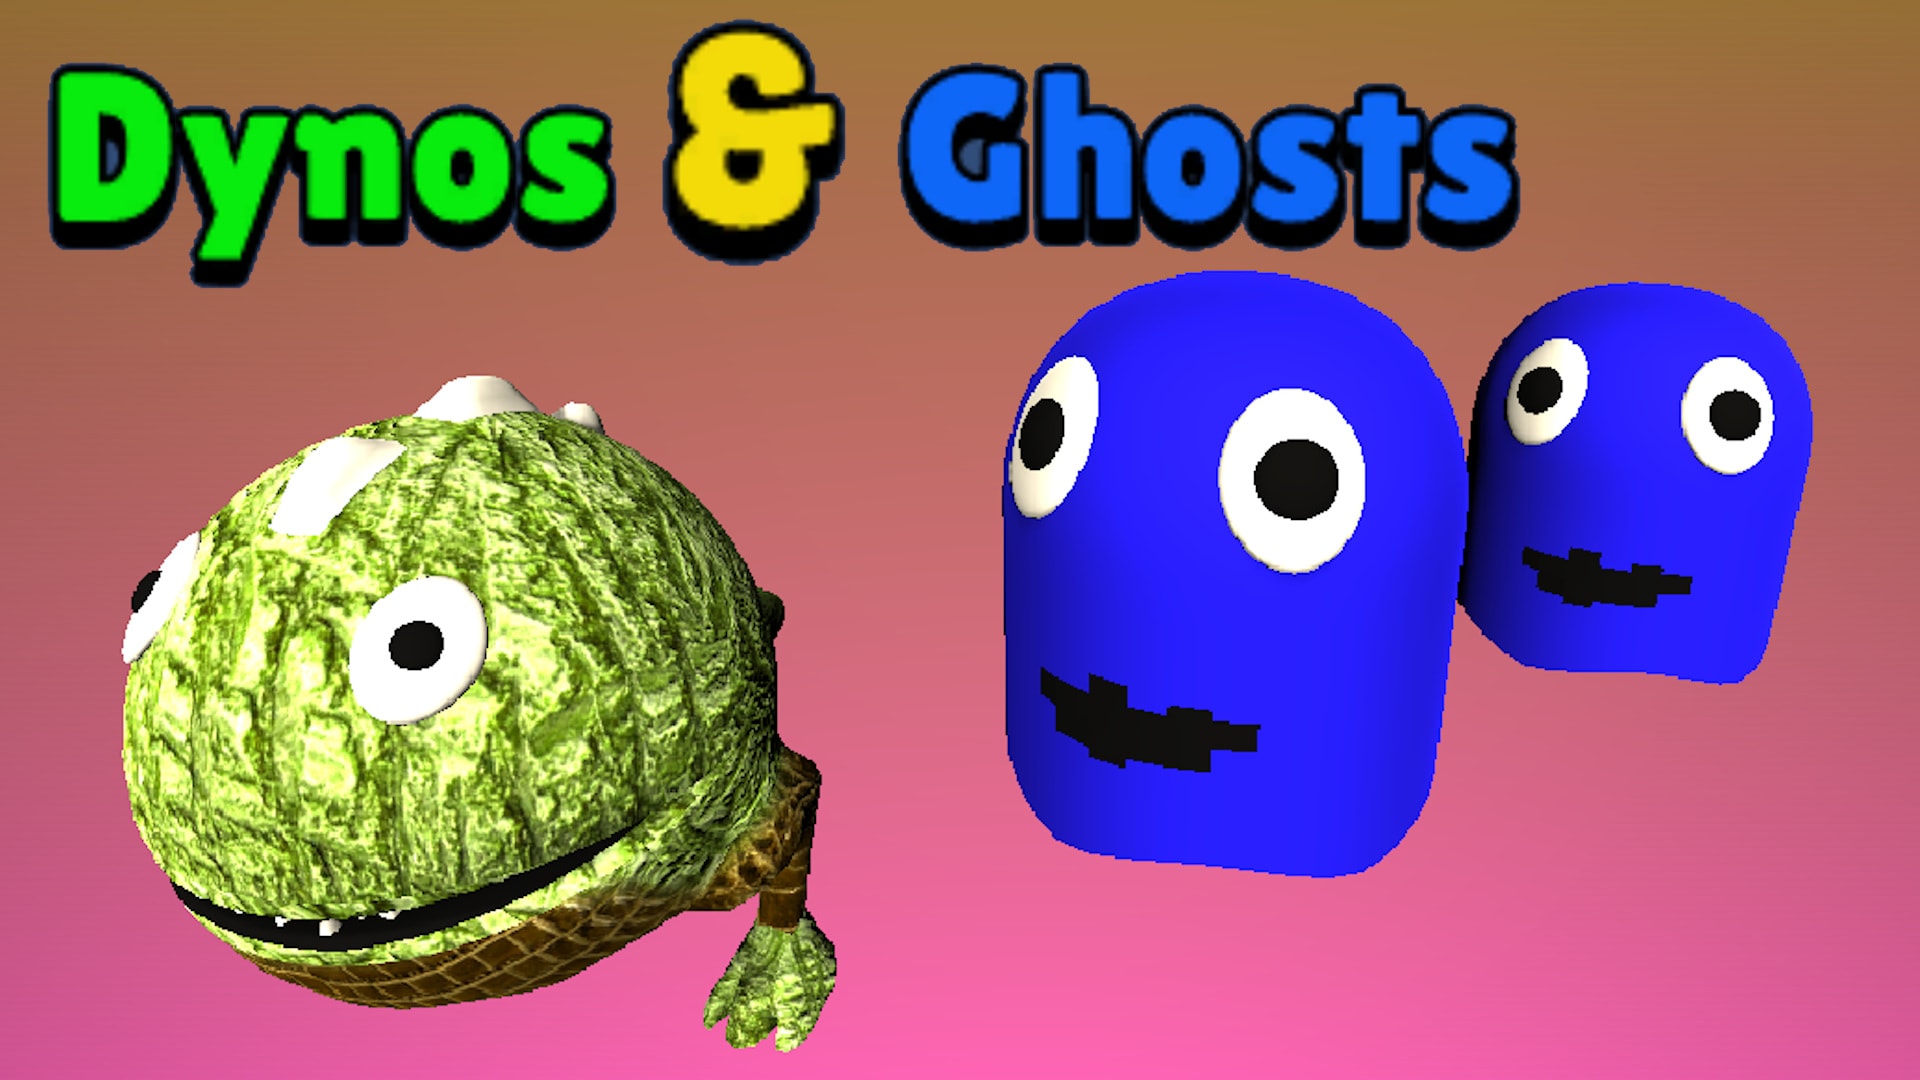 Dynos & Ghosts